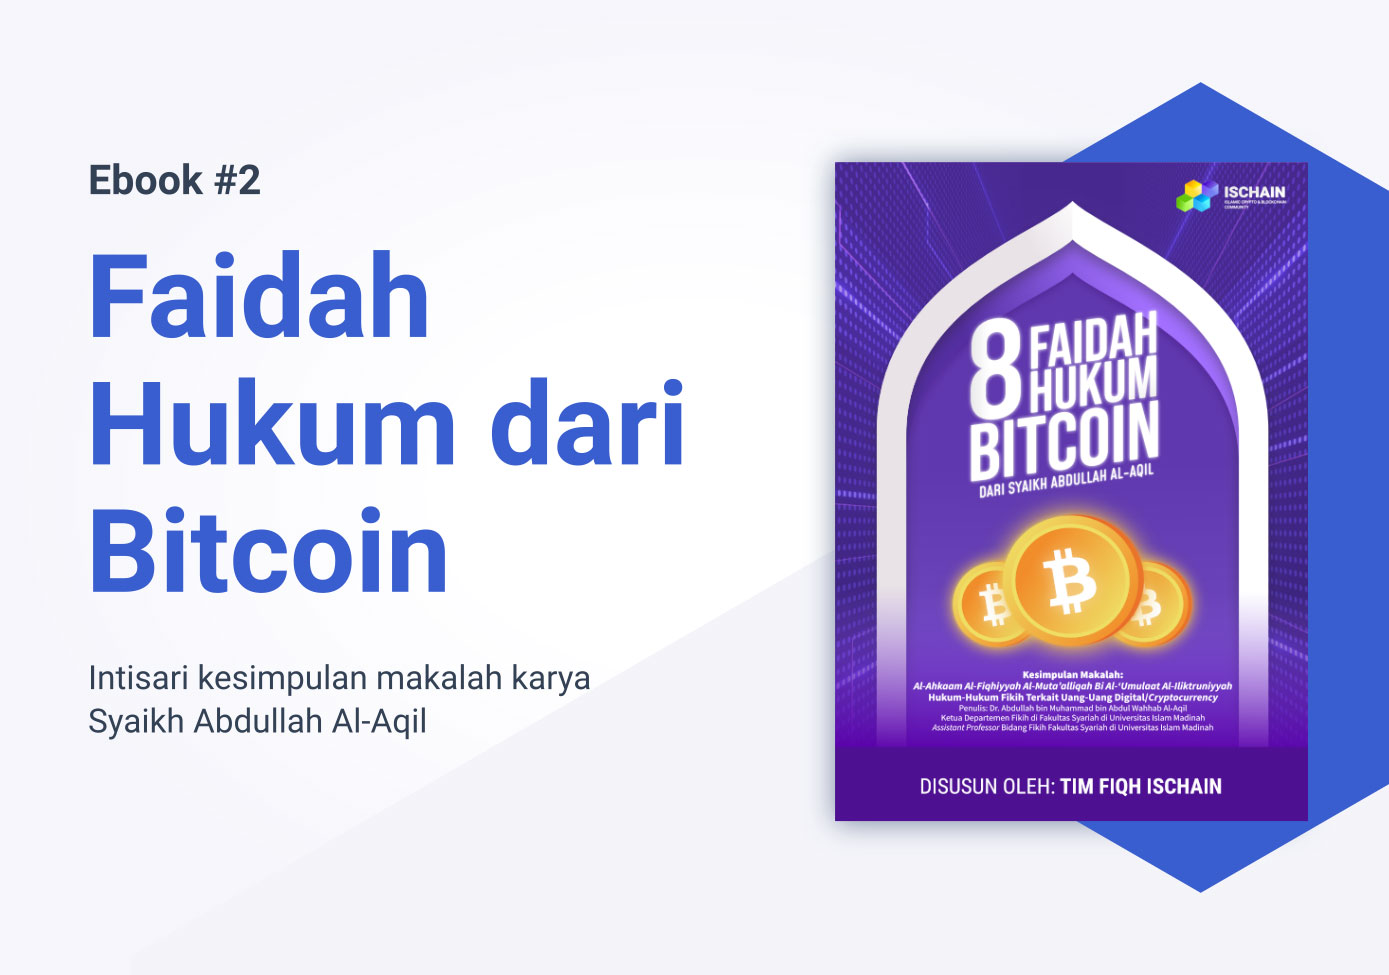 Faidah Hukum dari Bitcoin - Media Edukasi Aset Kripto dan Web3 Halal Pertama di Indonesia